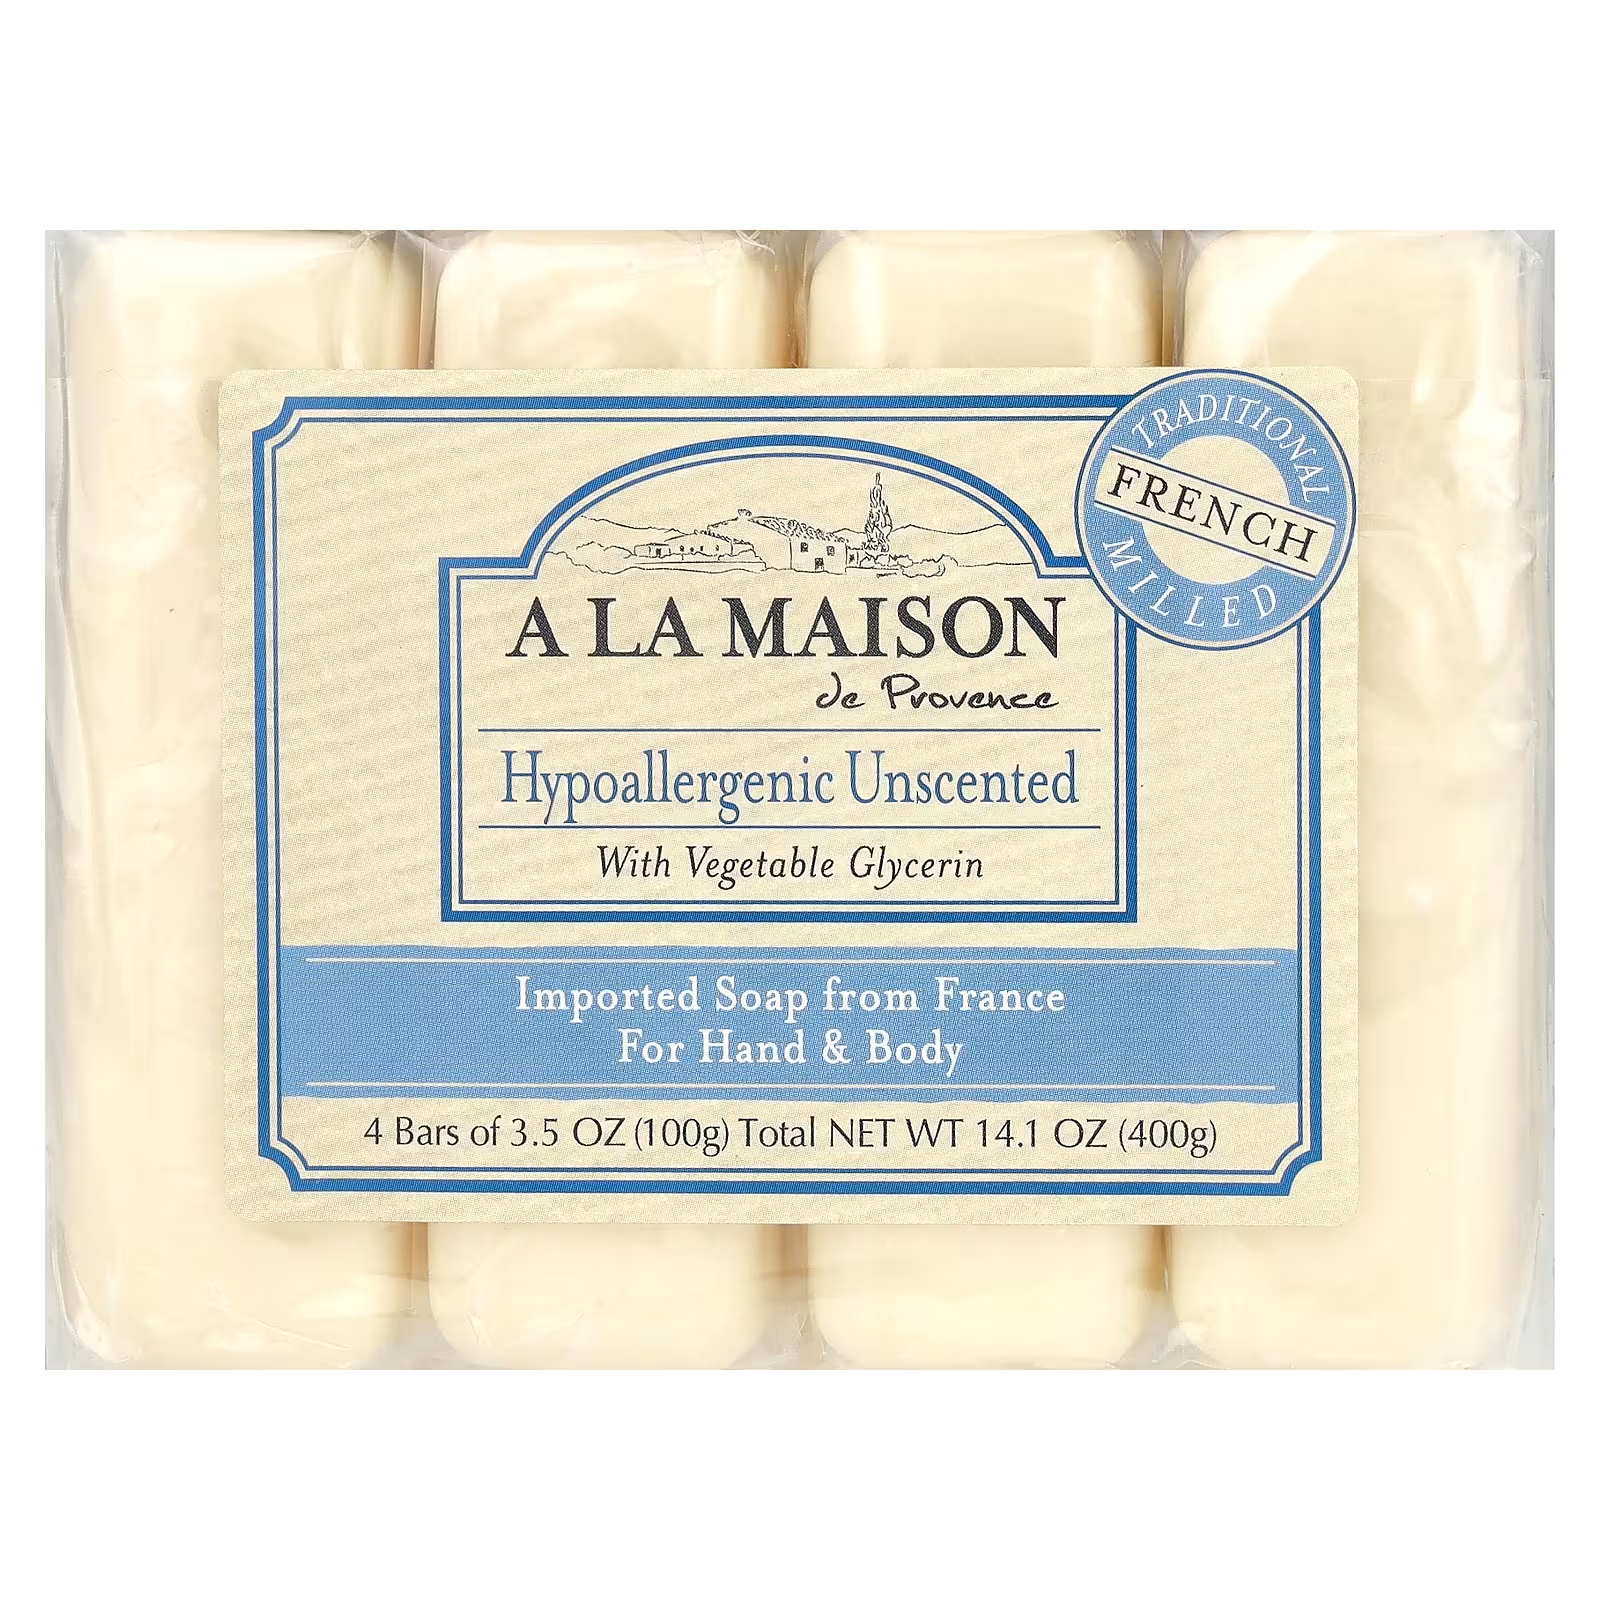 Мыло гипоаллергенное A La Maison de Provence для рук и тела, 4 куска по 100 г